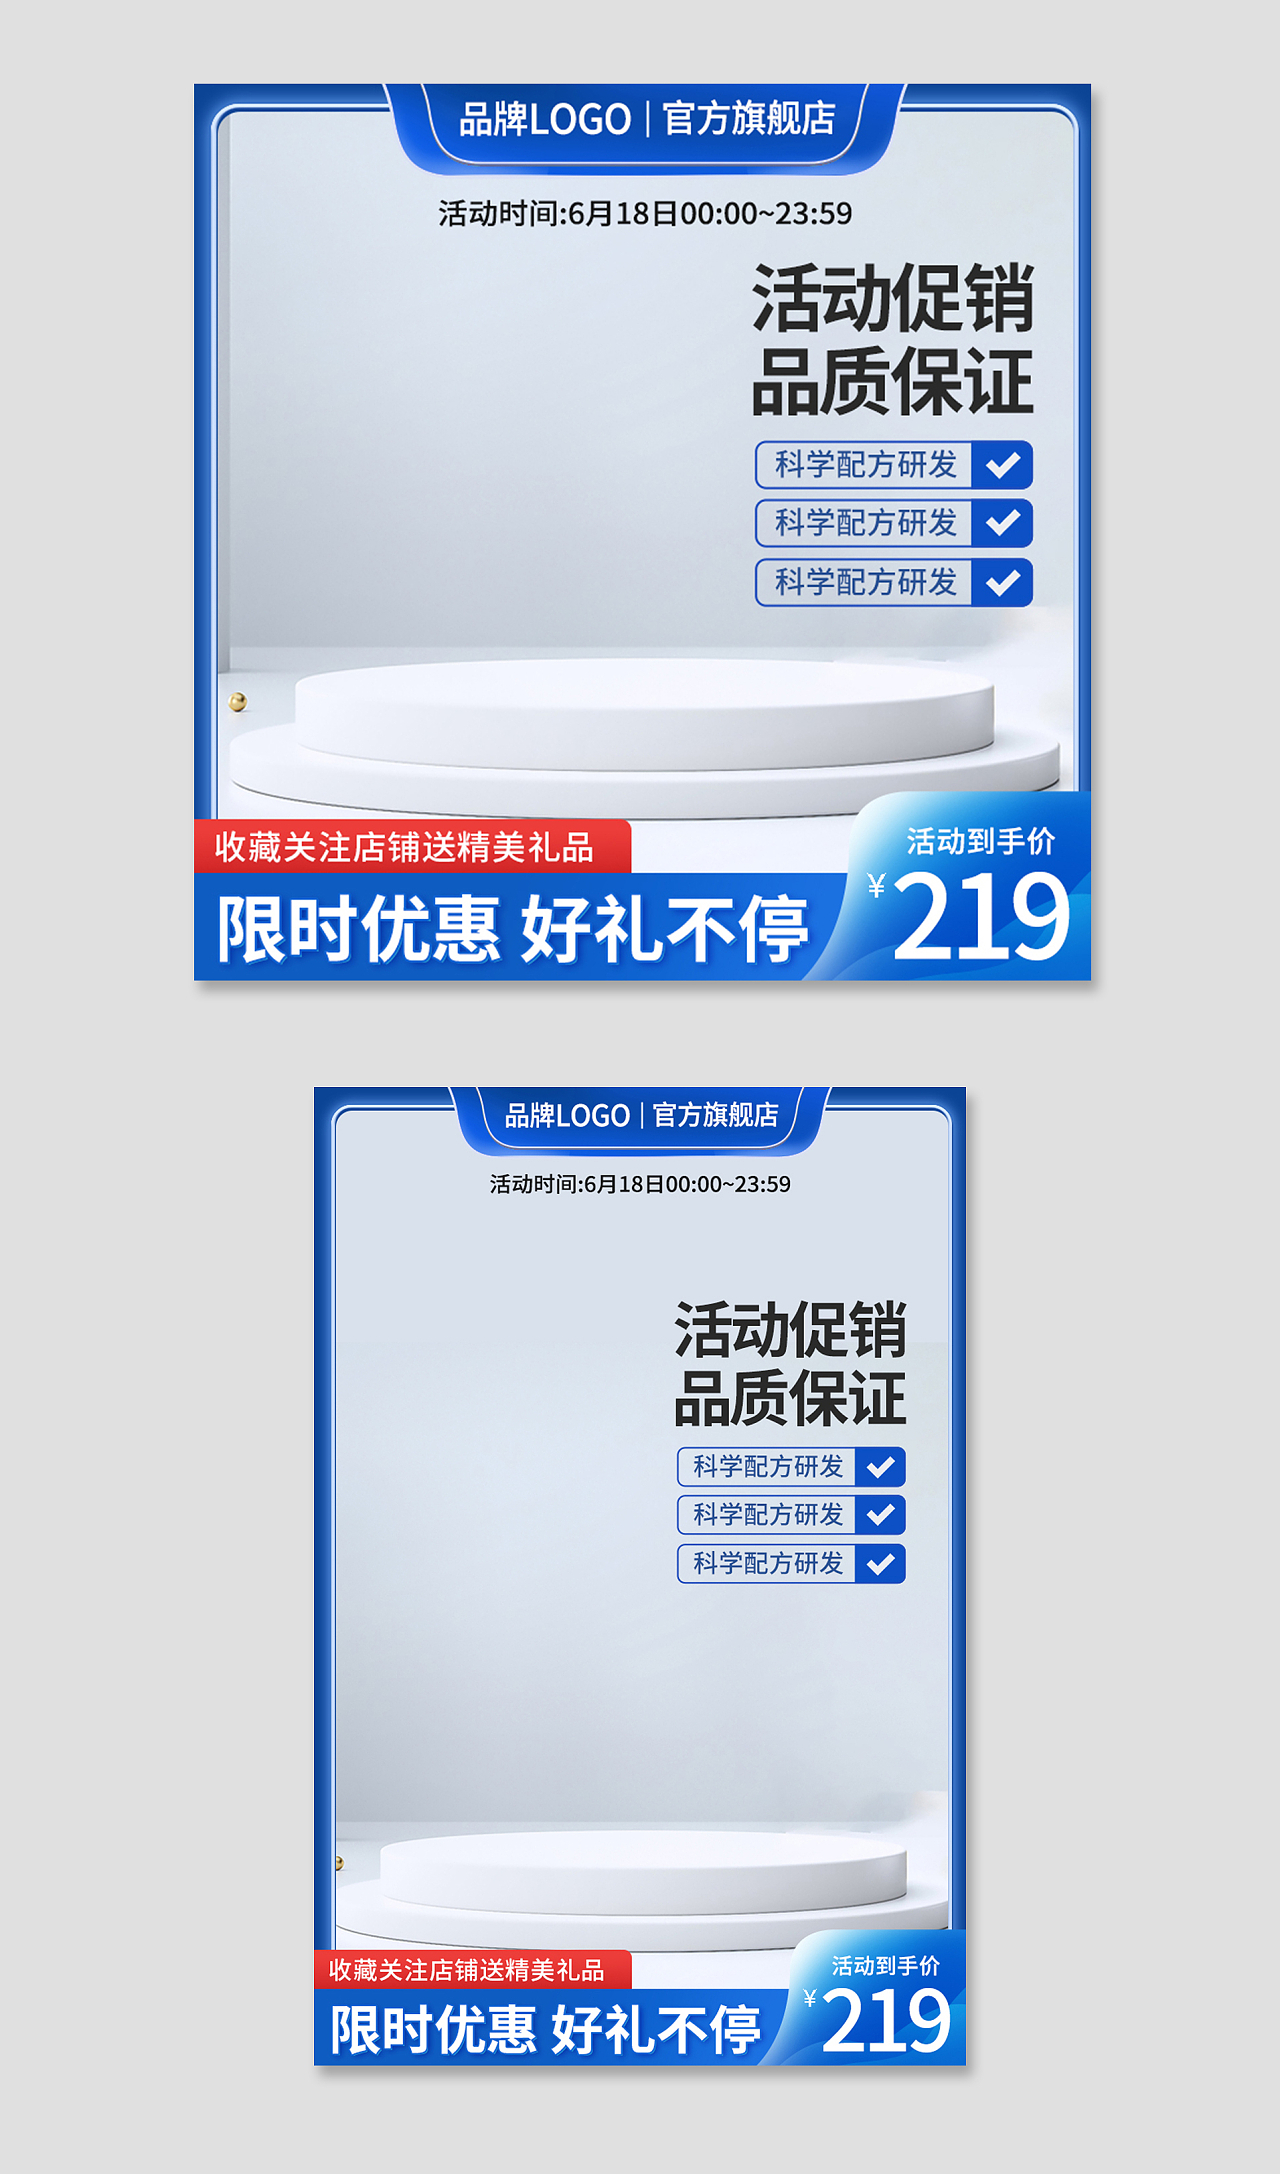 蓝色简约活动促销品质保证电商淘宝天猫京东品牌活动促销主图